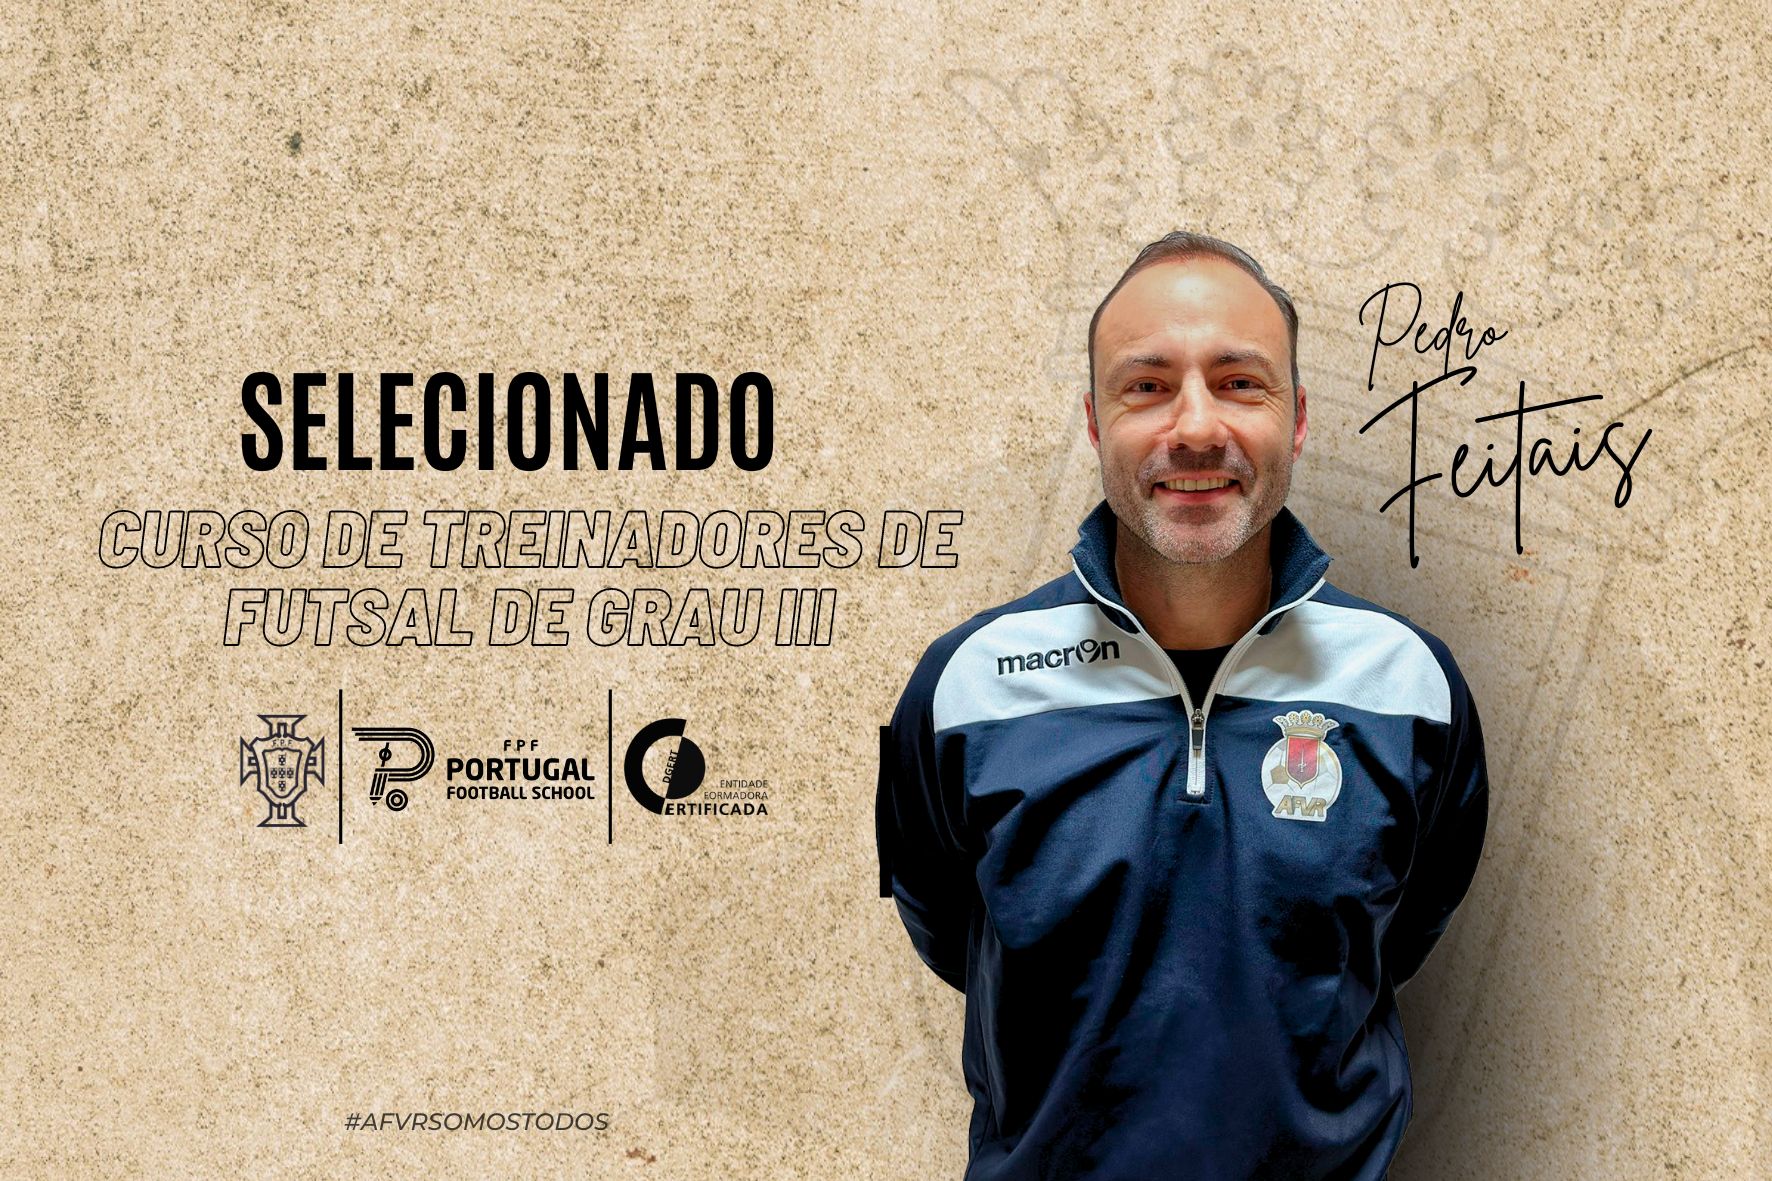 Pedro Feitais selecionado para Curso de Treinador de Futsal de Grau III | FPF